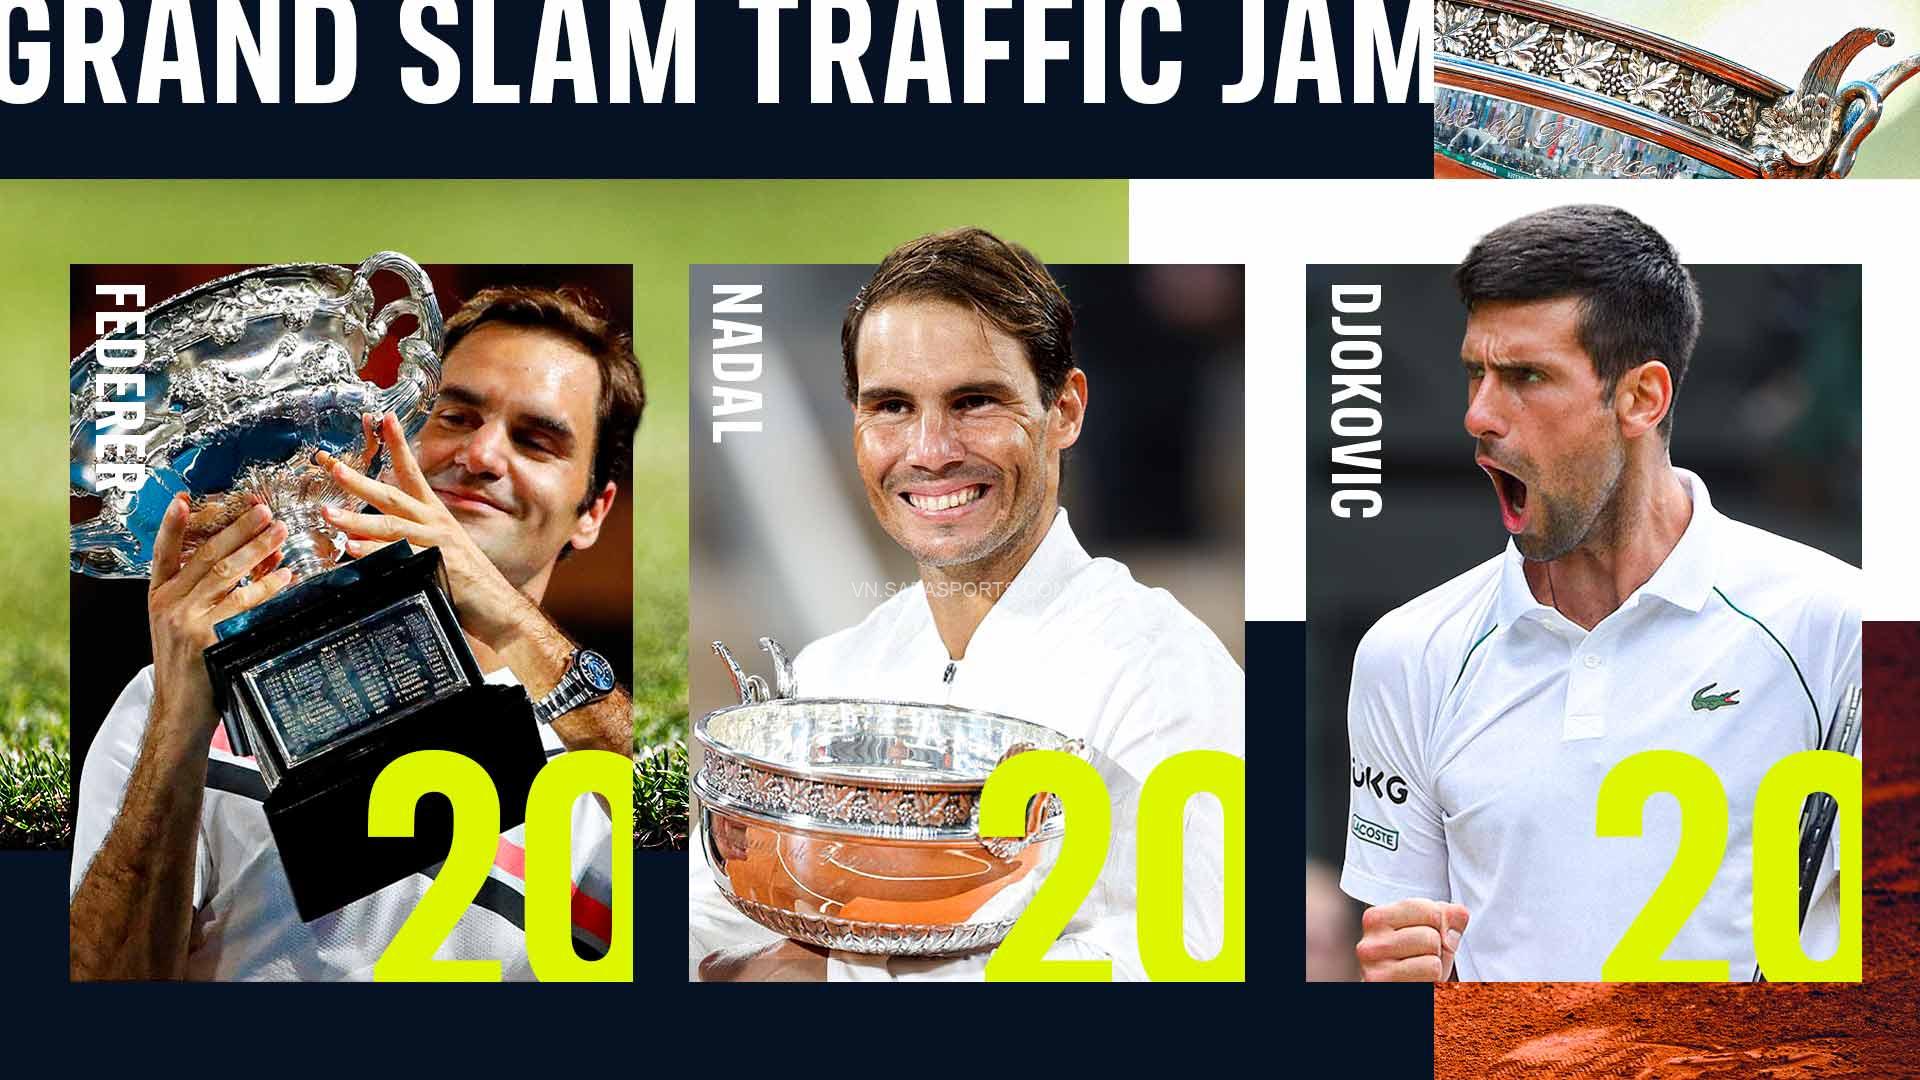 San bằng kỷ lục Grand Slam của Federer và Nadal, Djokovic tuyên bố: “Tôi giỏi nhất!”